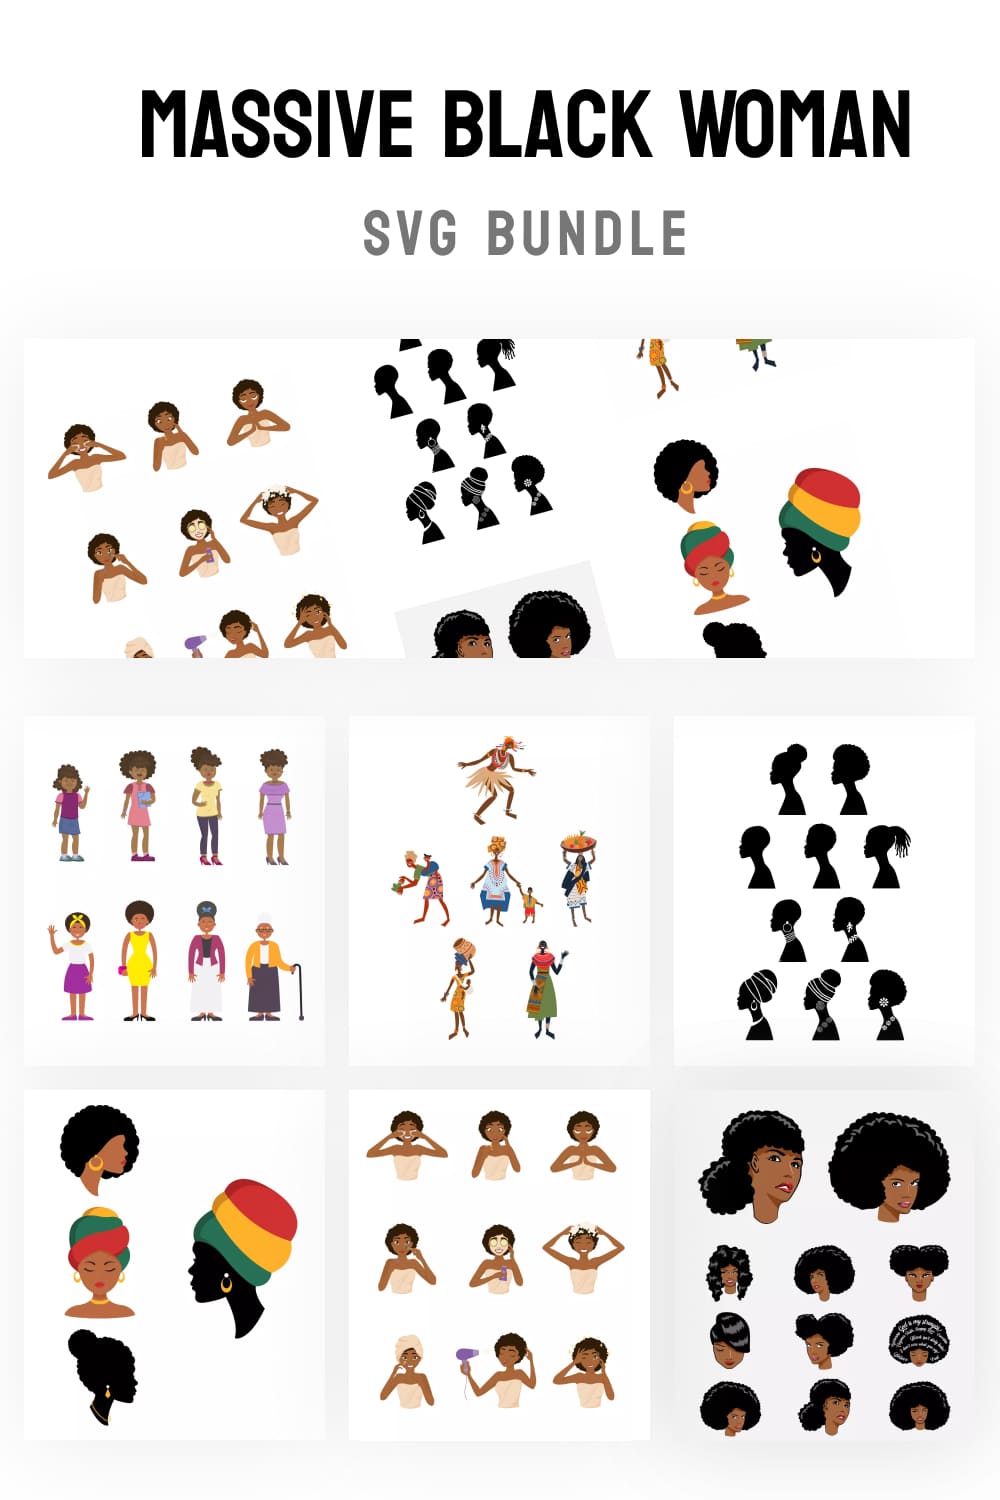 Massive Black Woman SVG Bundle Pinterest.